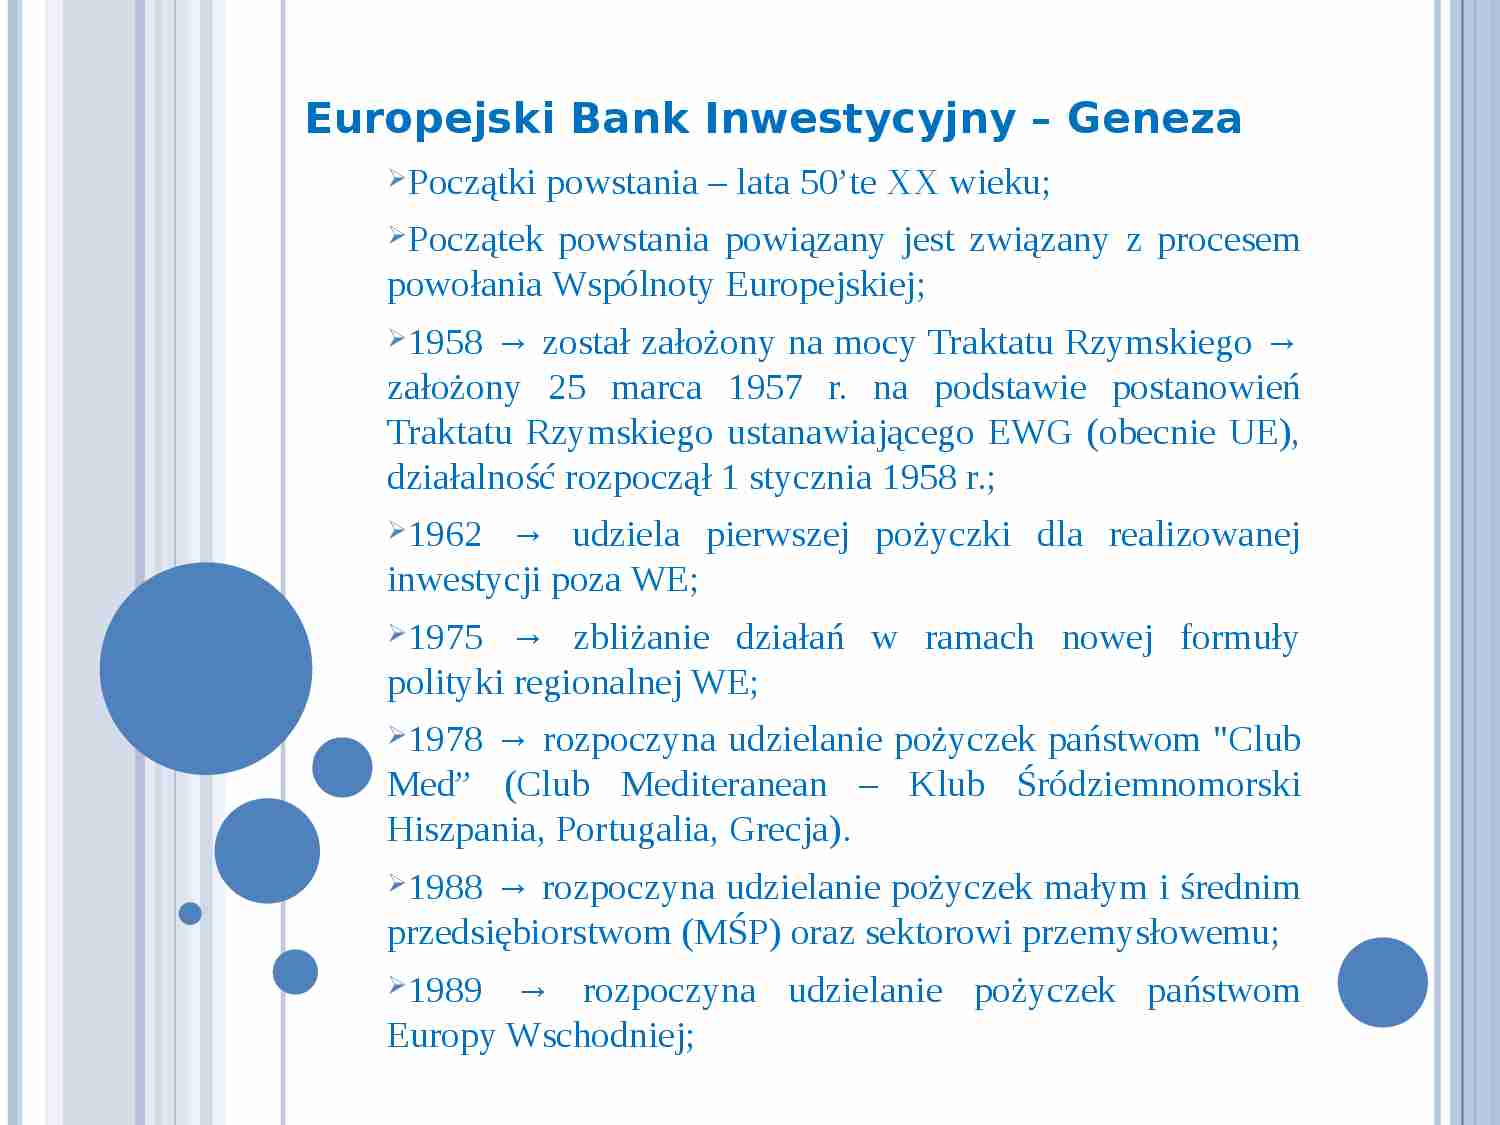 Europejski Bank Inwestycyjny - strona 1